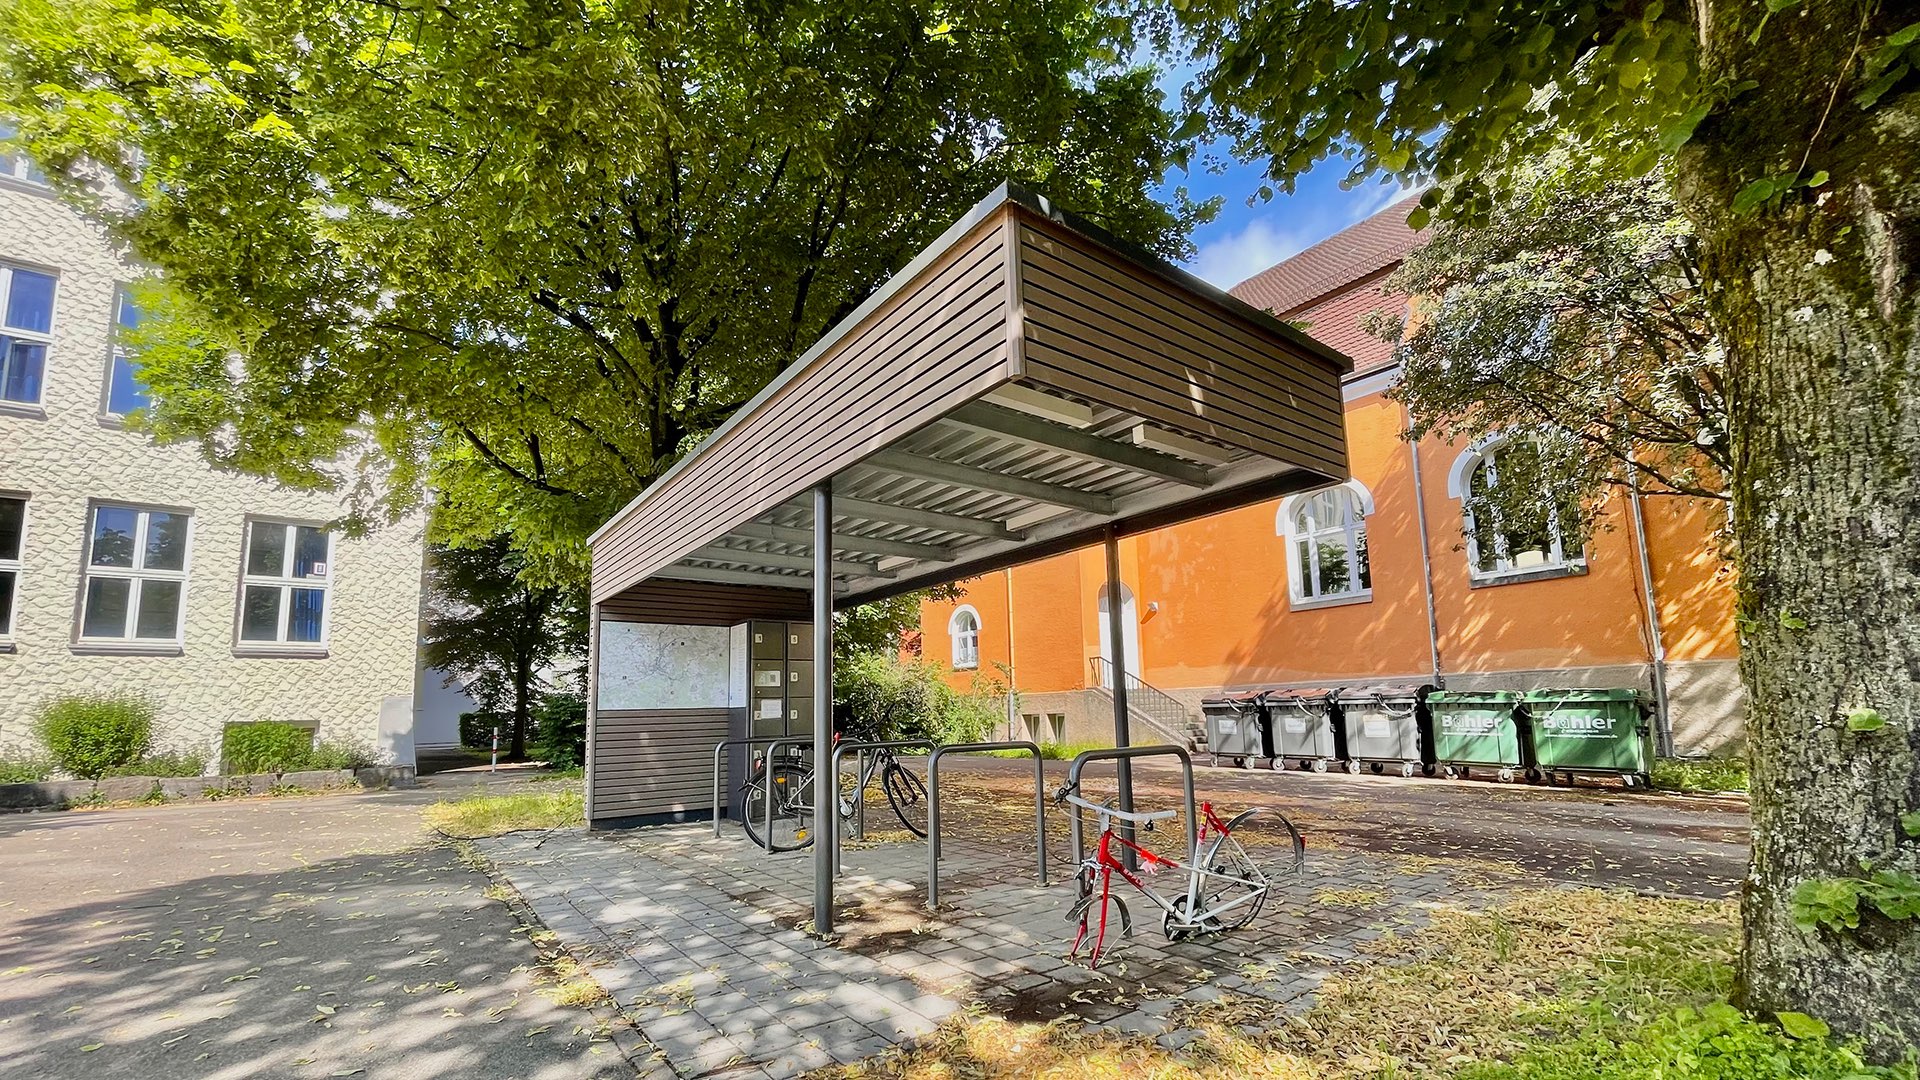 Haegele Boehm PROJEKTE Stadt Aalen Fahrradstationen Bohlschule 04